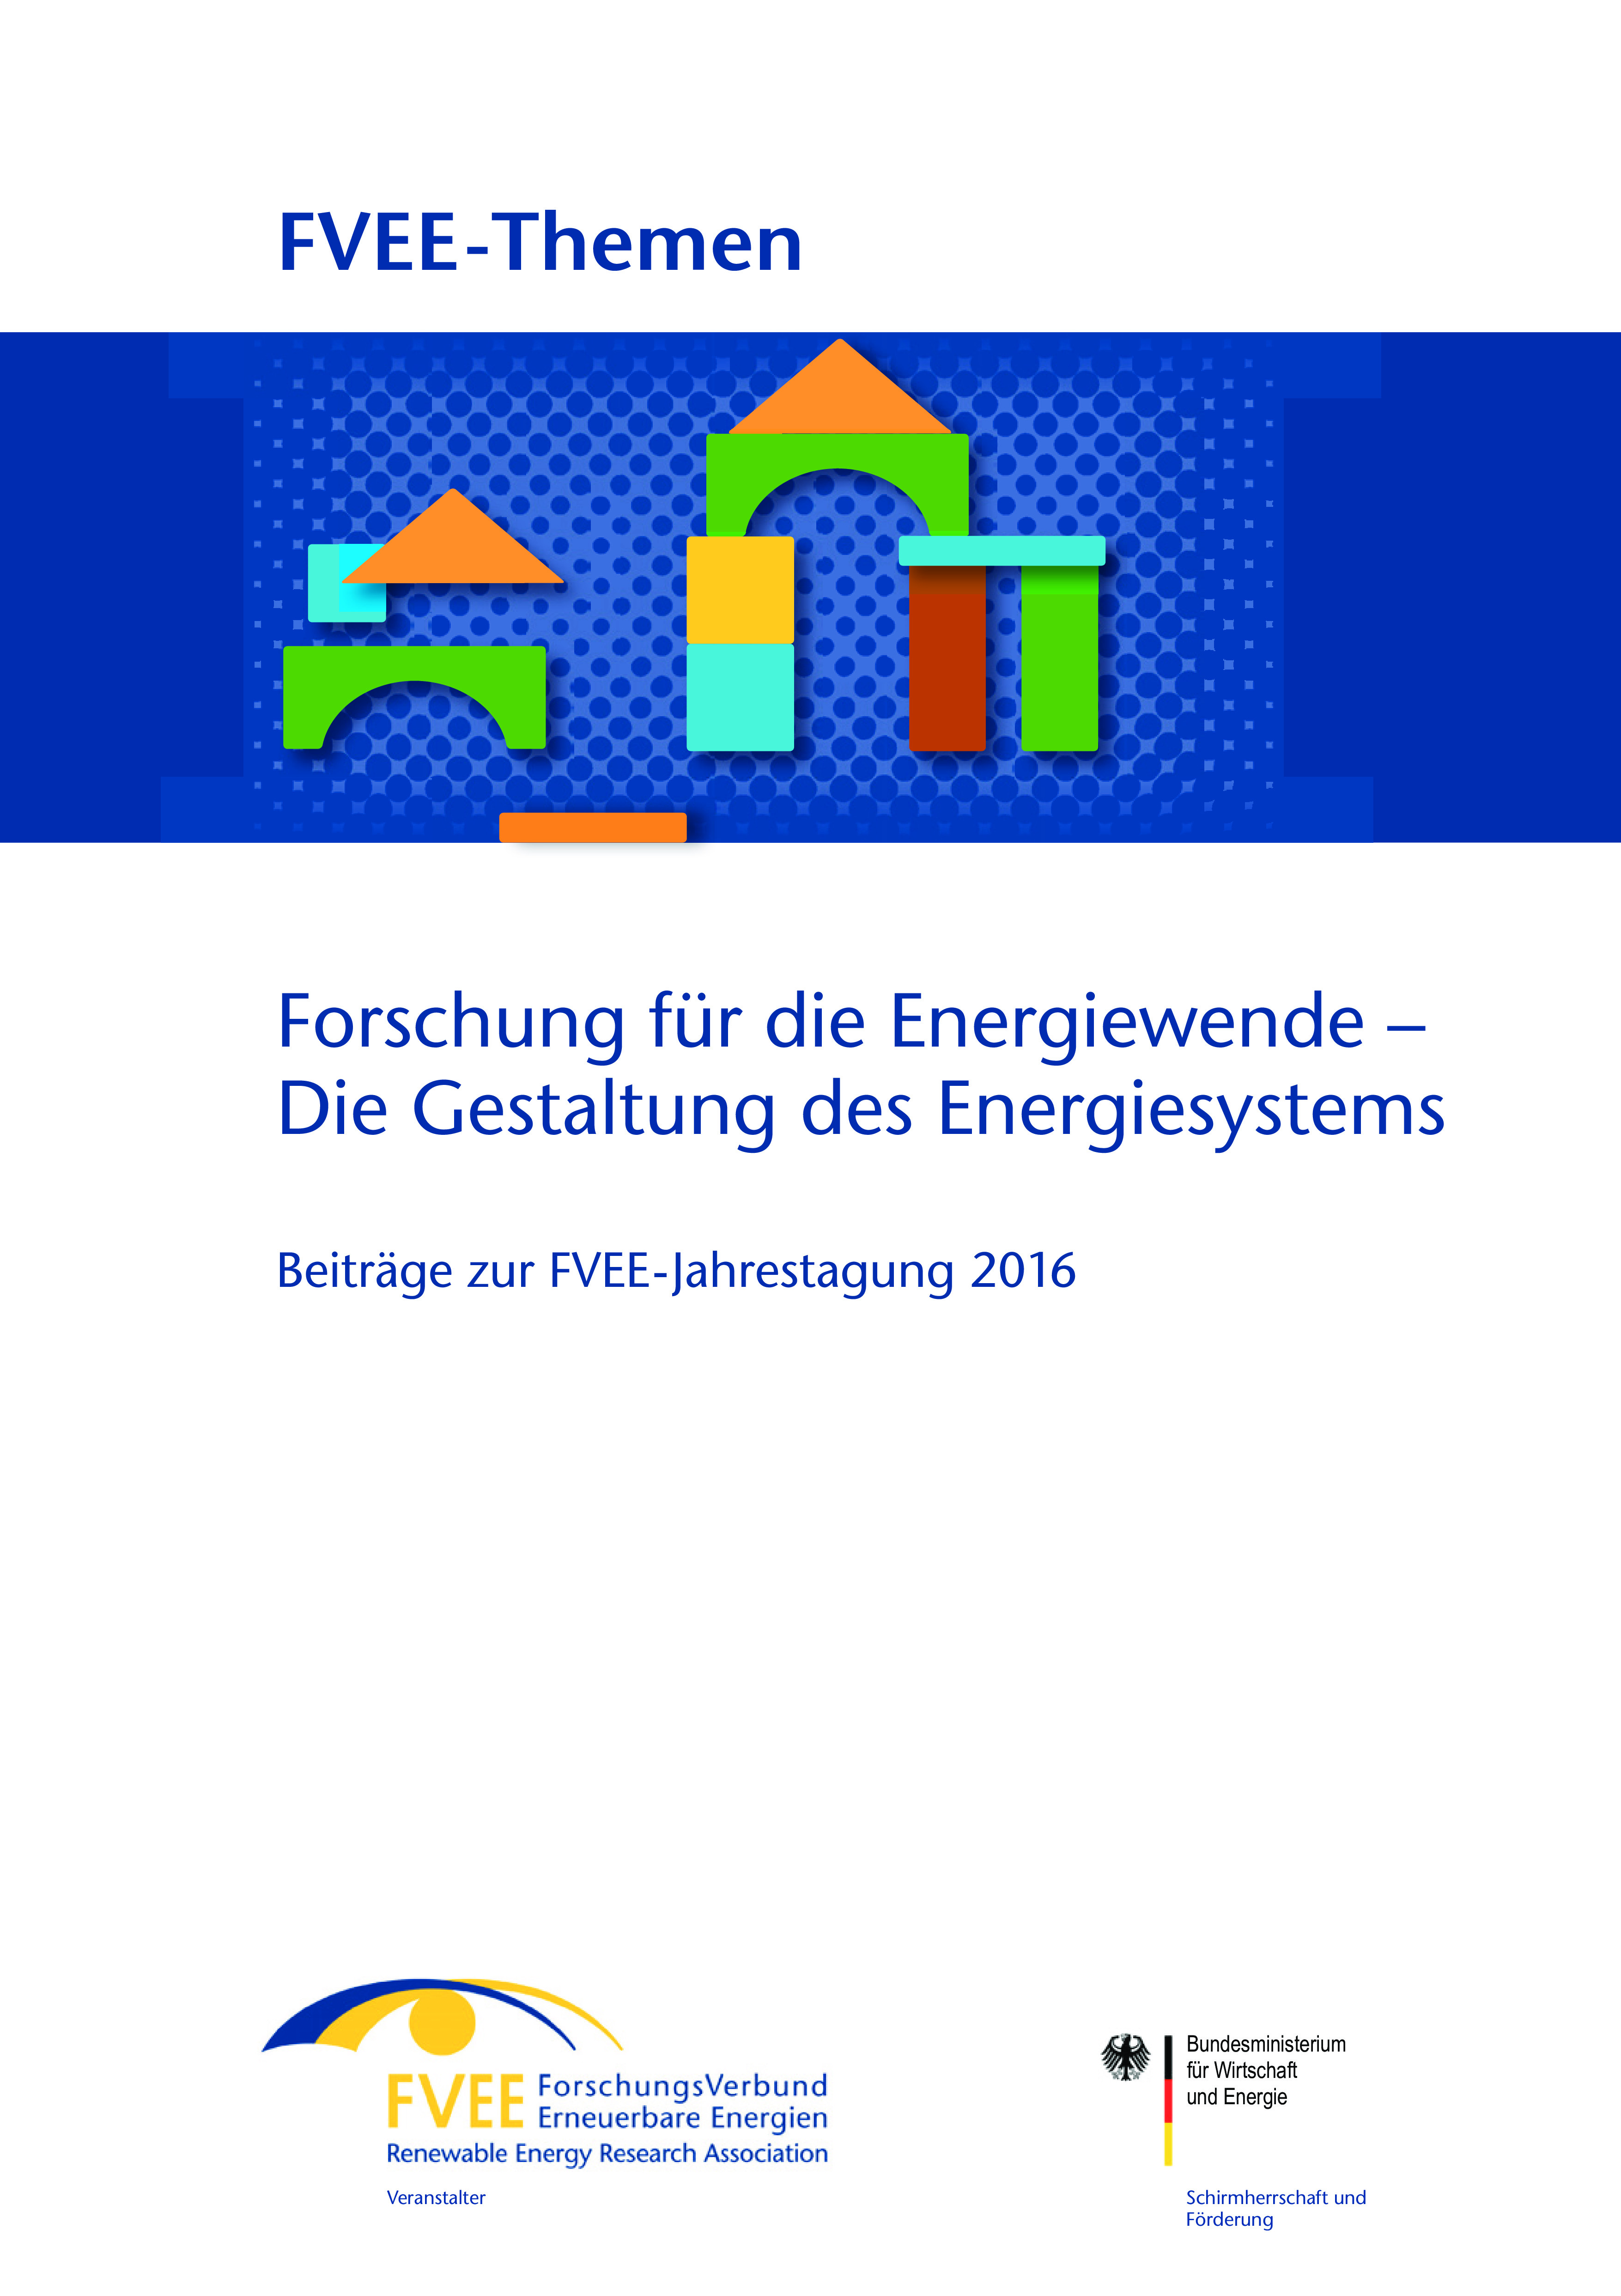 Themen 2016: Forschung für die Energiewende – Die Gestaltung des Energiesystems